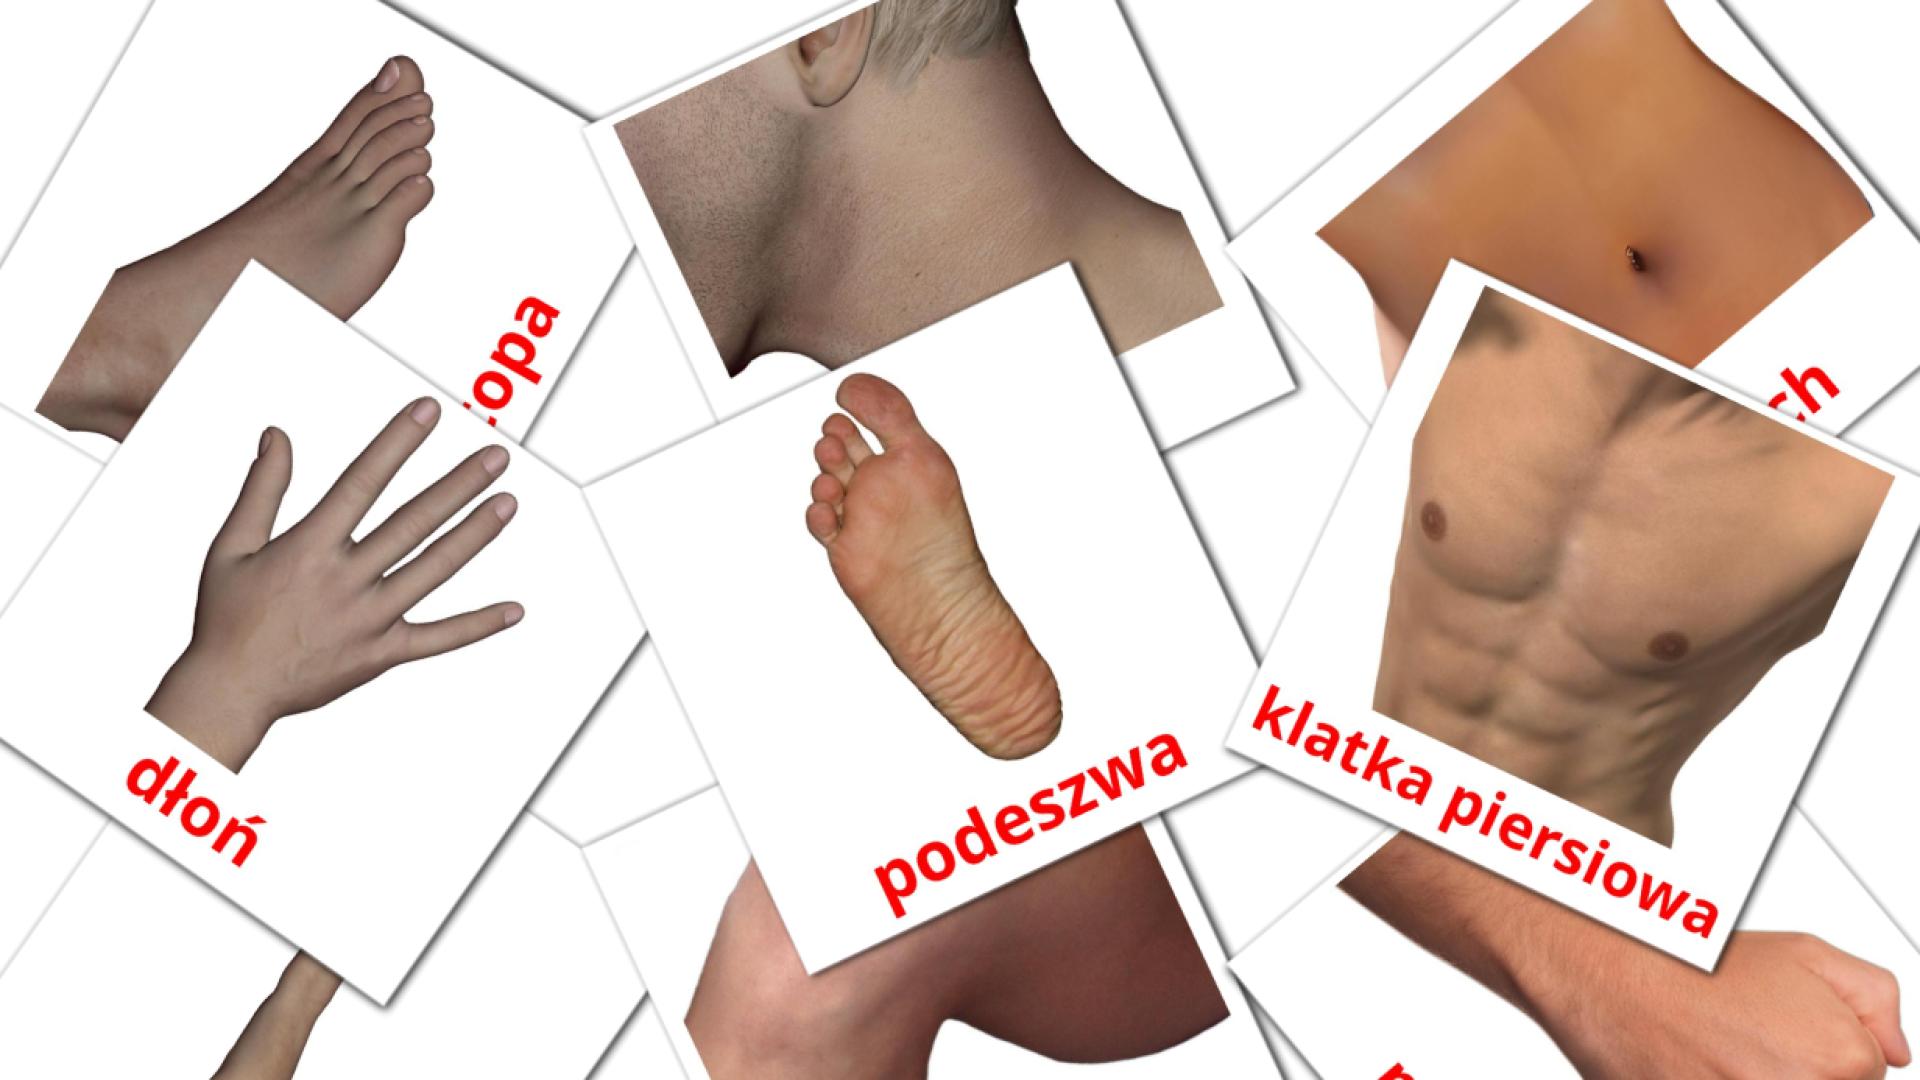 Bildkarten für Części ciała